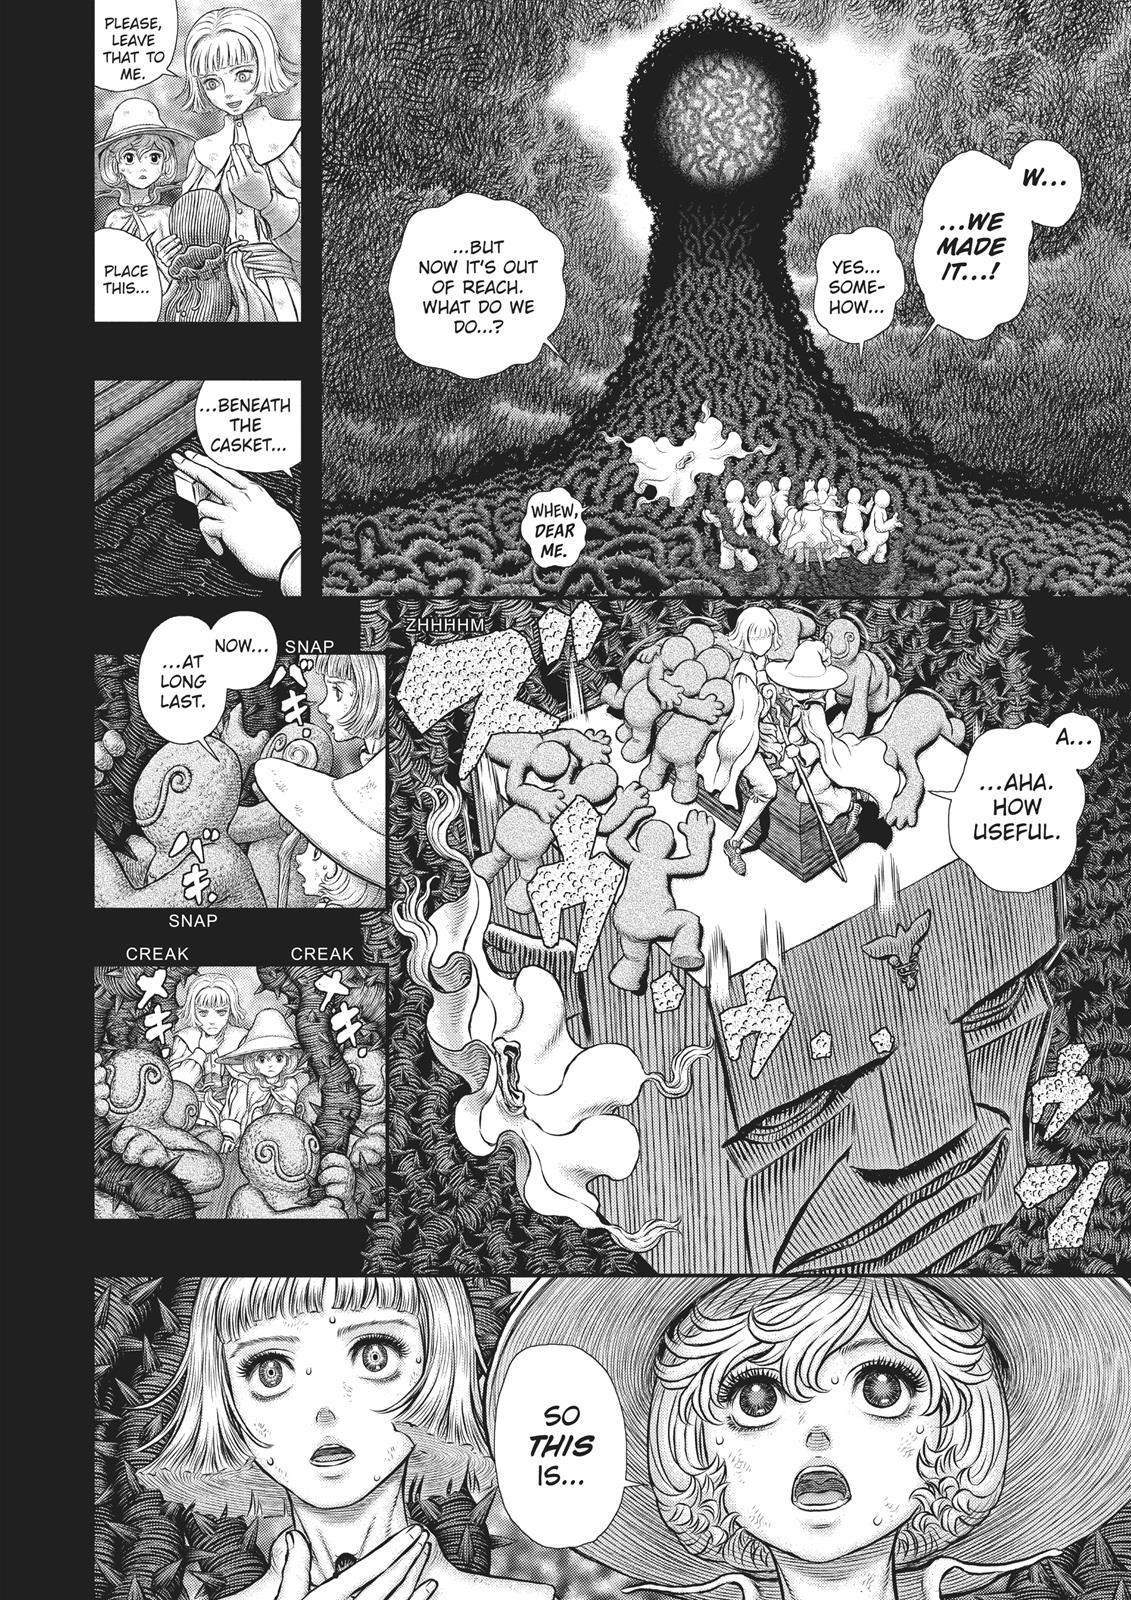 Berserk Manga Chapter 353 image 15